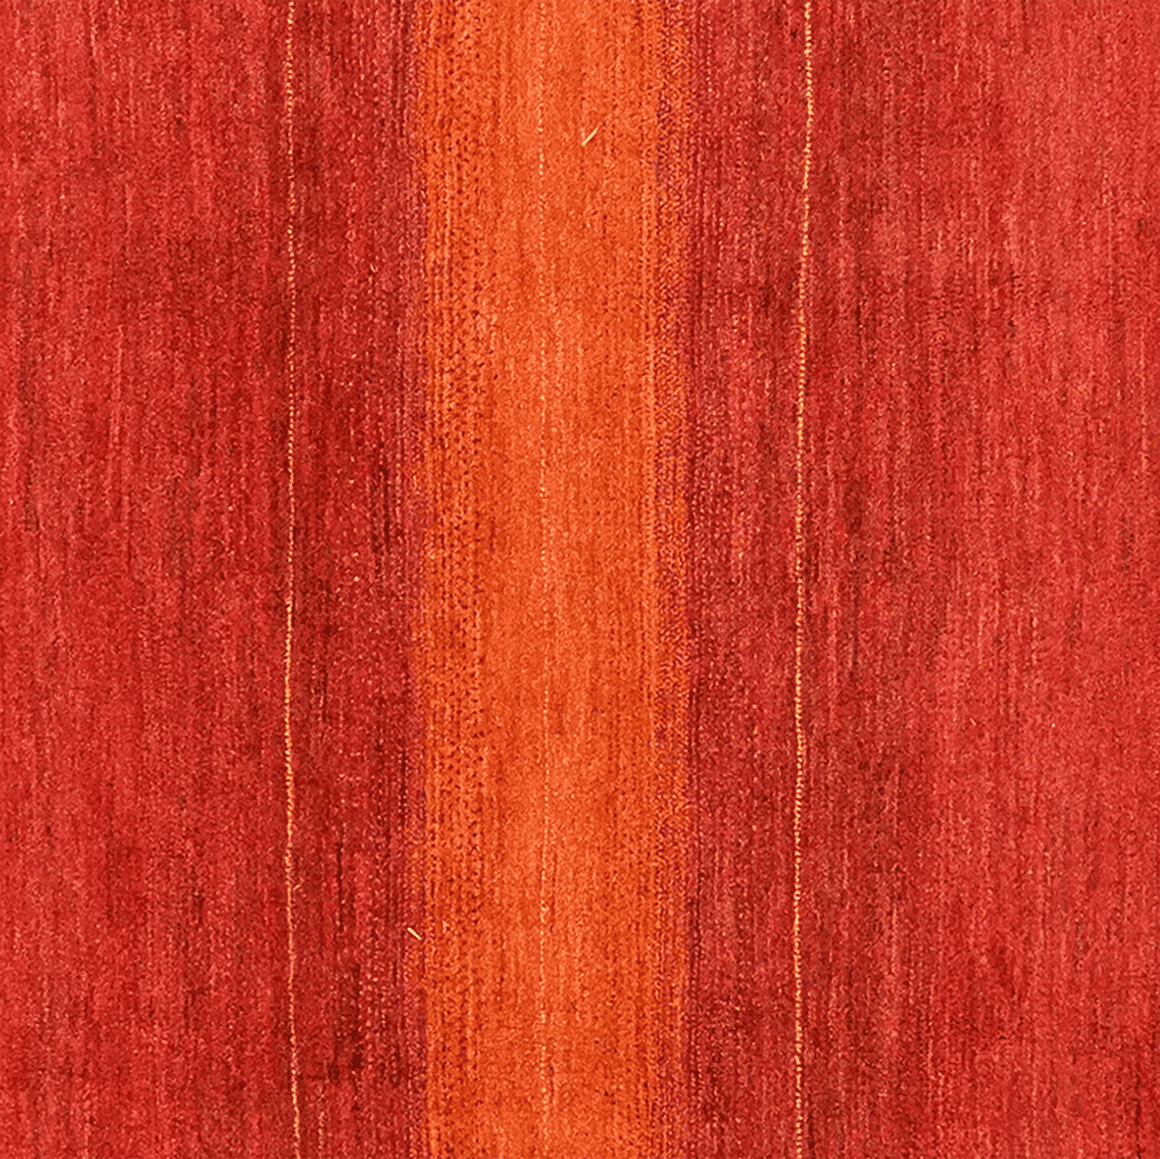 Rizbaf 296x223cm Carpet Vintage